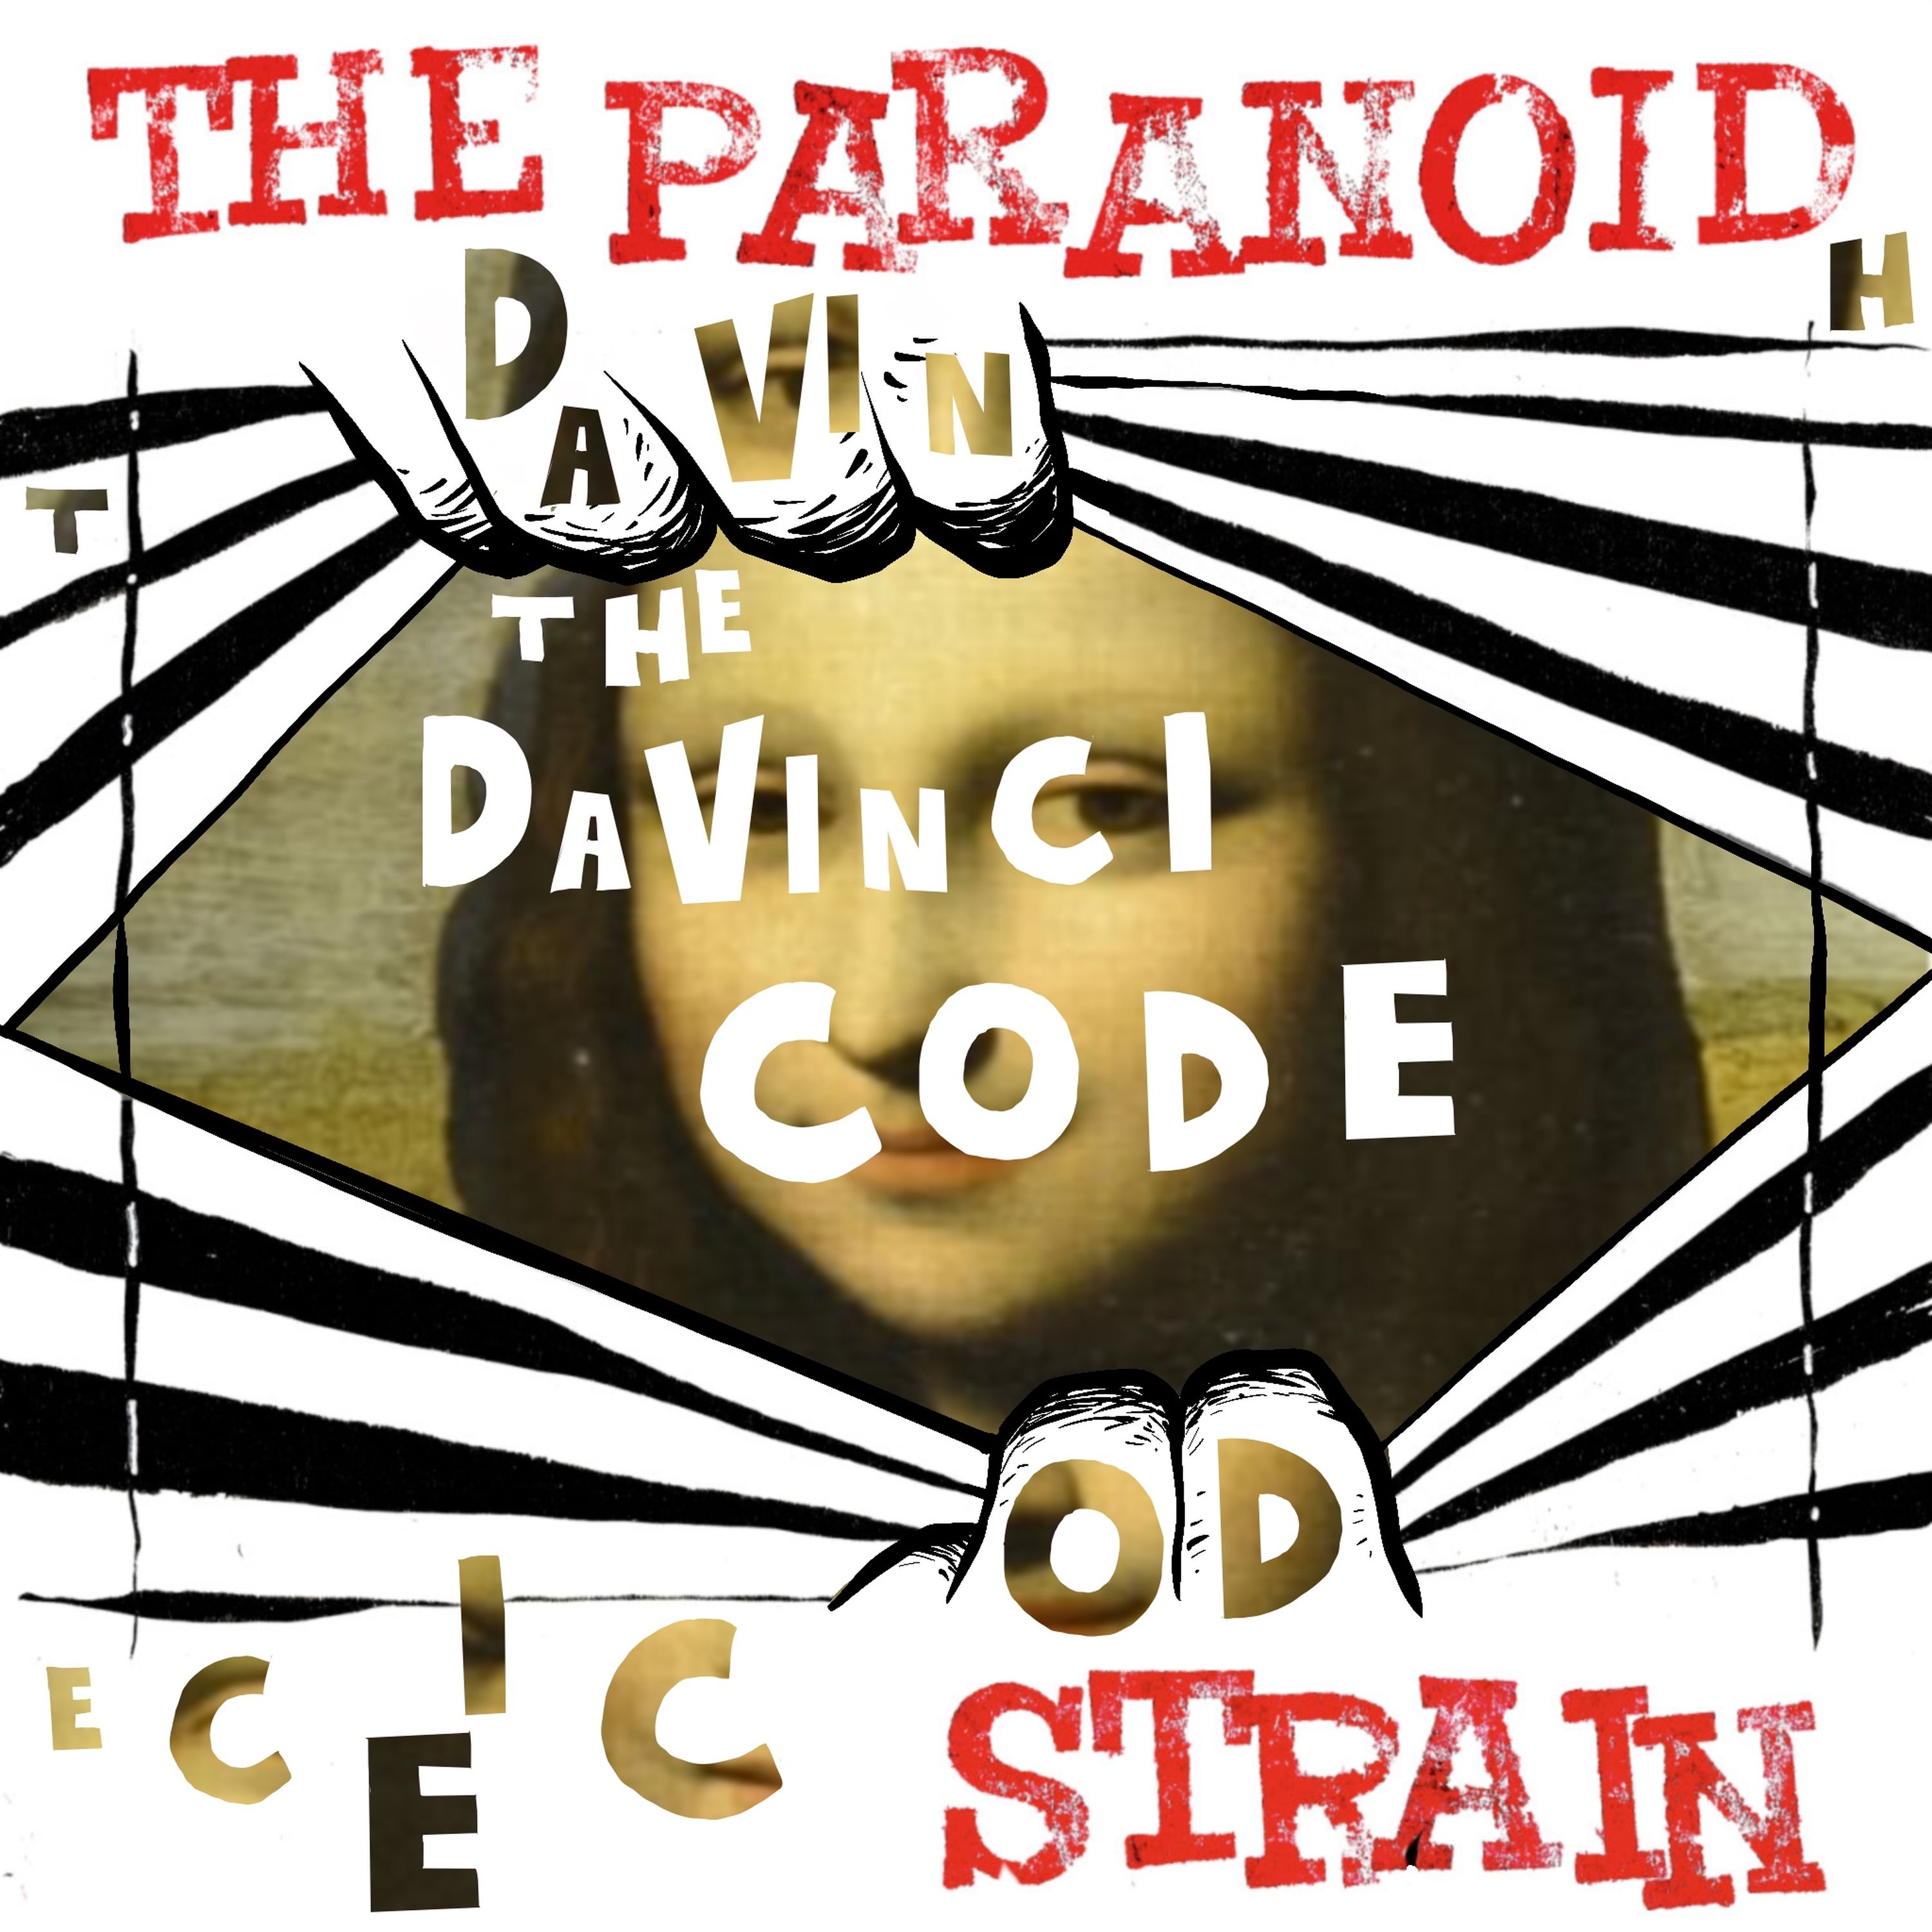 New: Secret Societies I, Part 8 - The Da Vinci Code Image